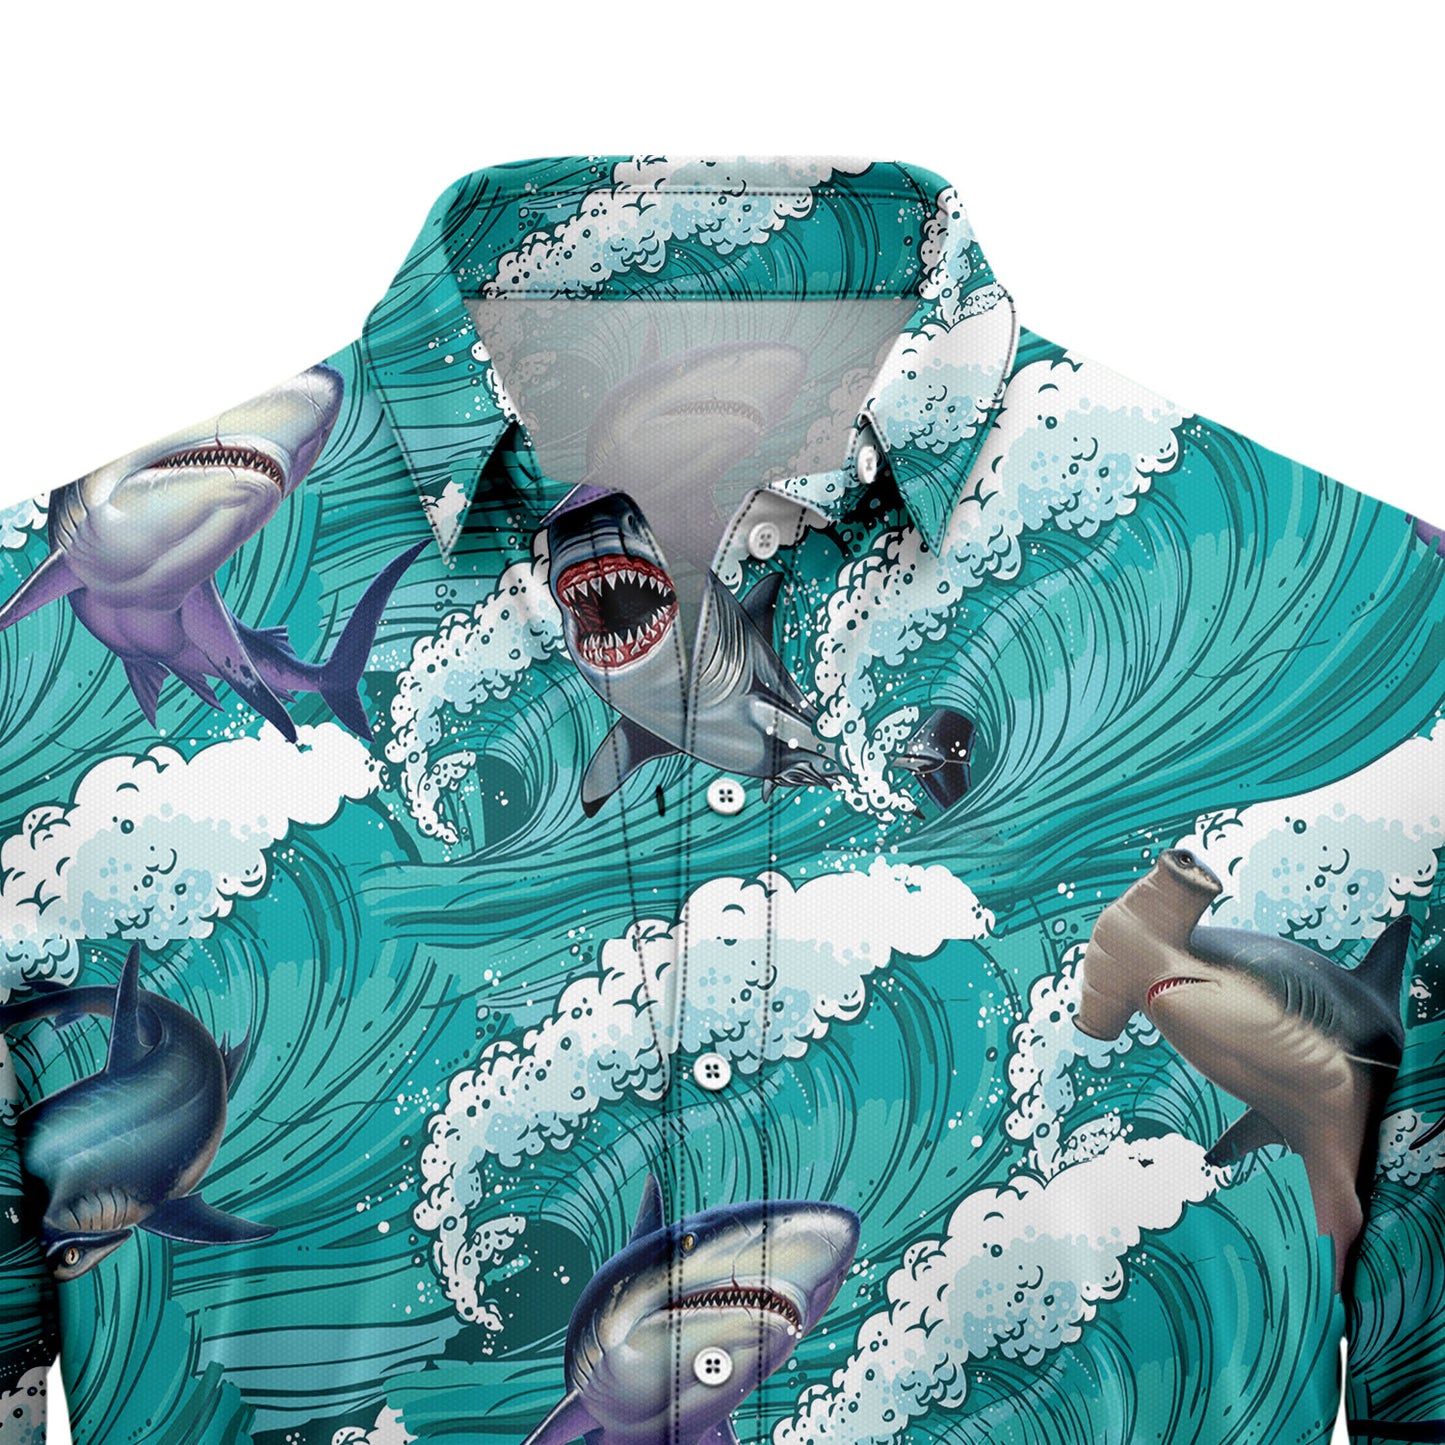 Shark Sea Waves G5730 Hawaiian Shirt